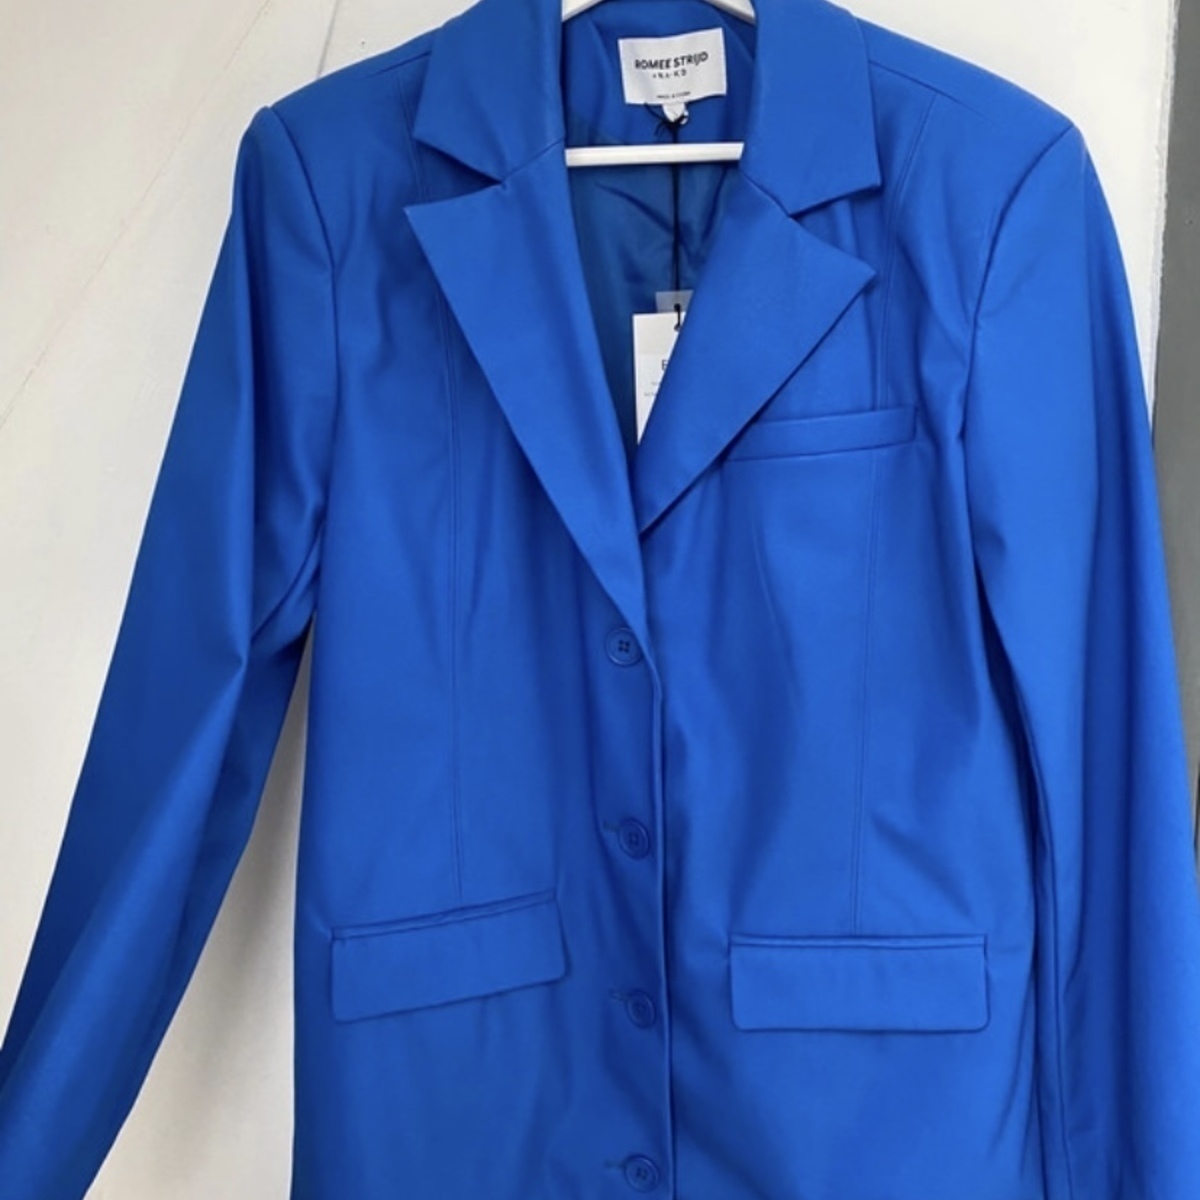 Vêtements Femme Votre ville doit contenir un minimum de 2 caractères Blazer bleu électrique Bleu